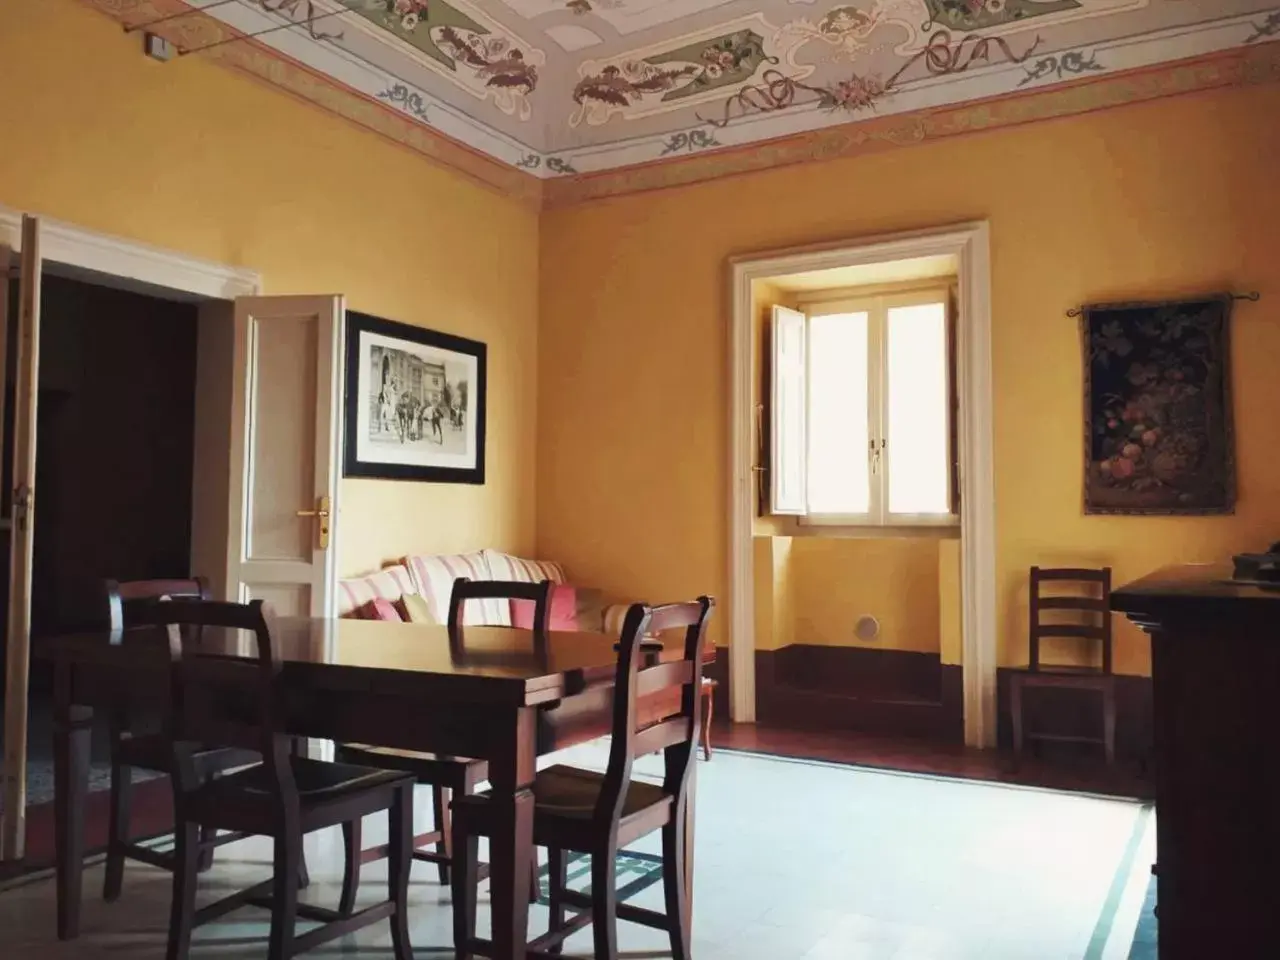 Dining area in Palazzo Gambuzza